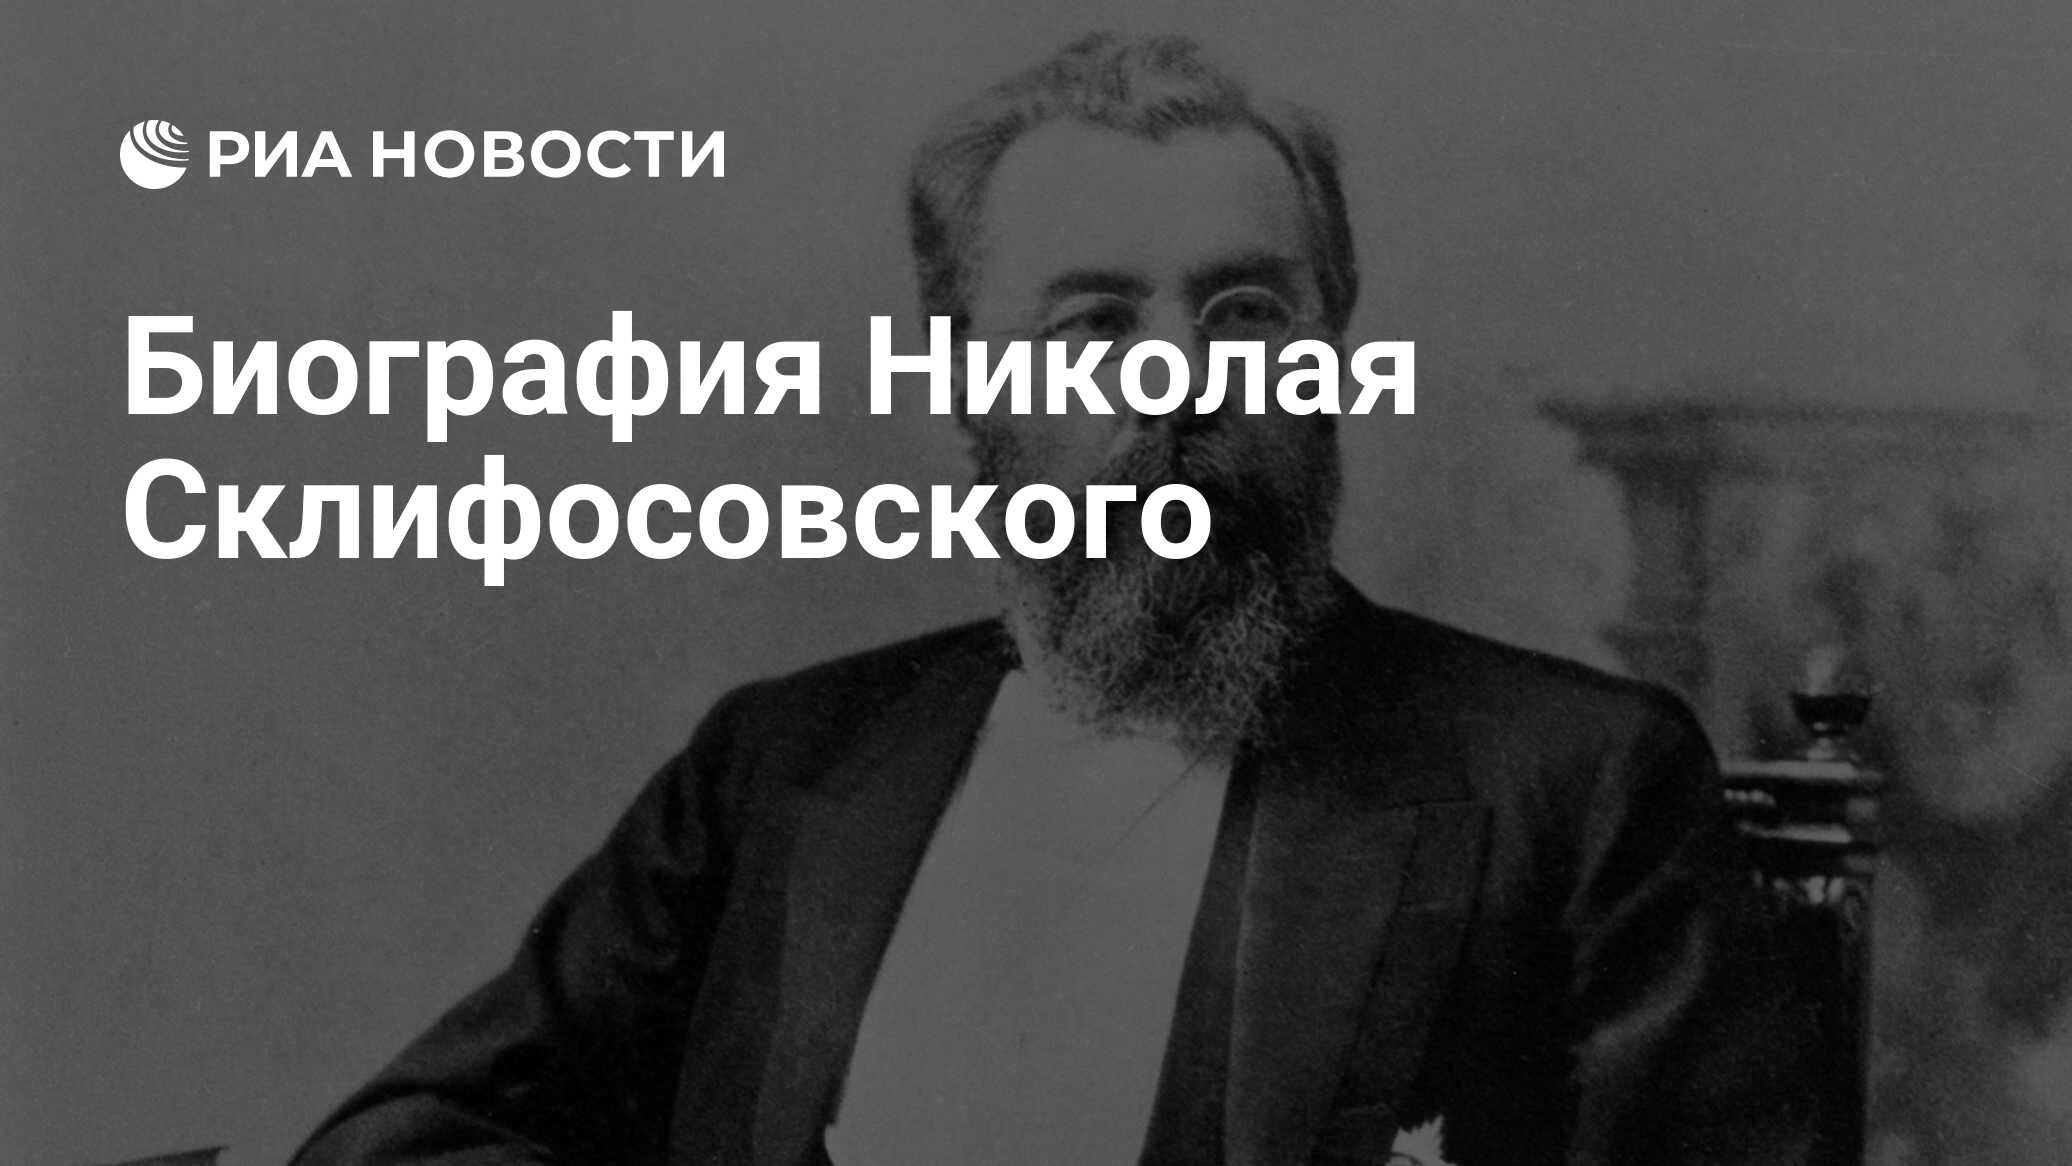 Николай Васильевич Склифосовский 1836 1904 Реферат